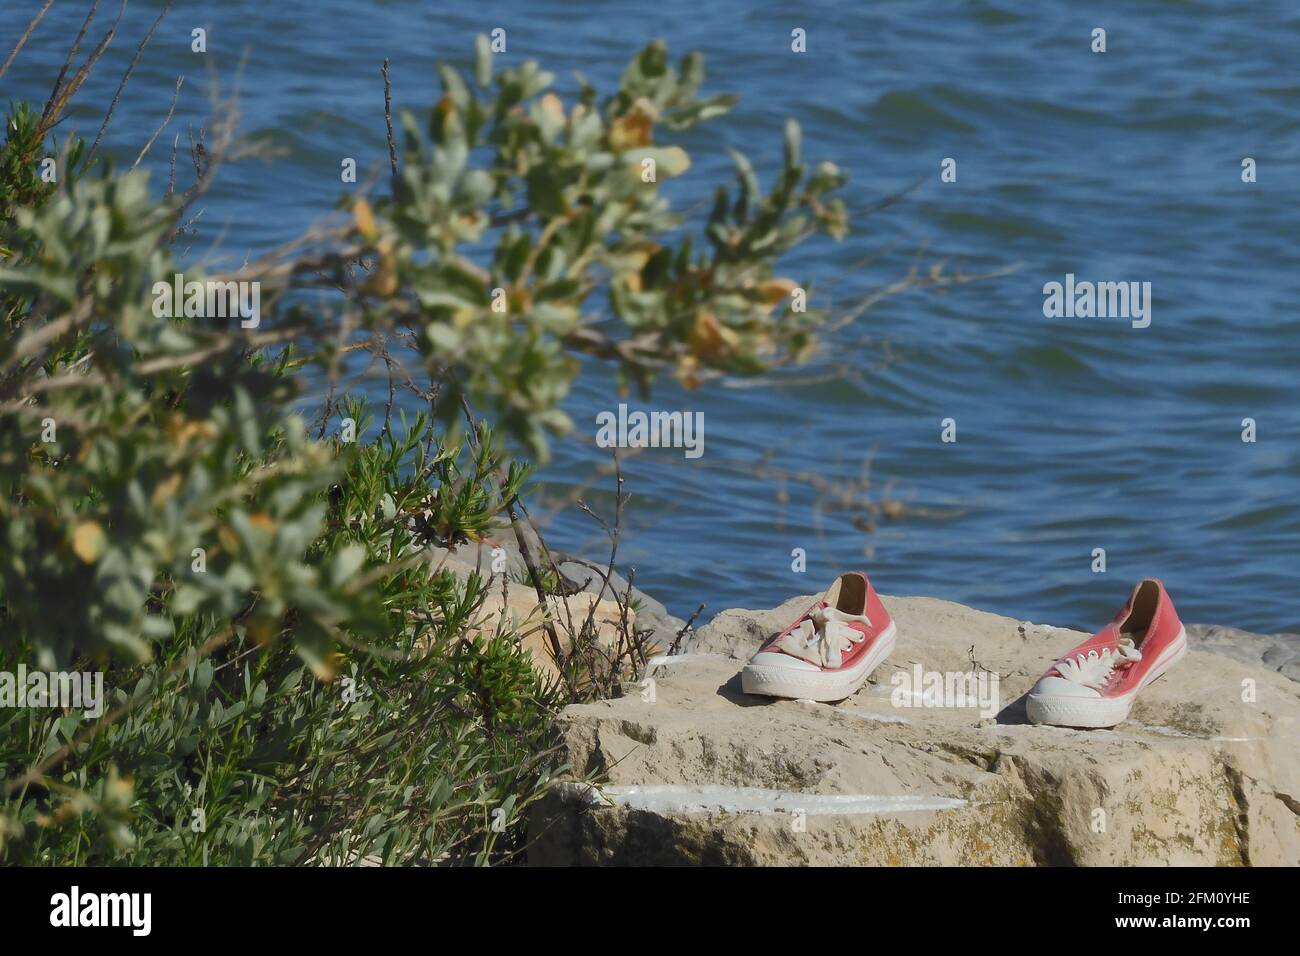 Une paire de chaussures rouges Converse Mediterranean Sea, Palavas les Flots, Montpellier, Occitanie, sud de la France Banque D'Images